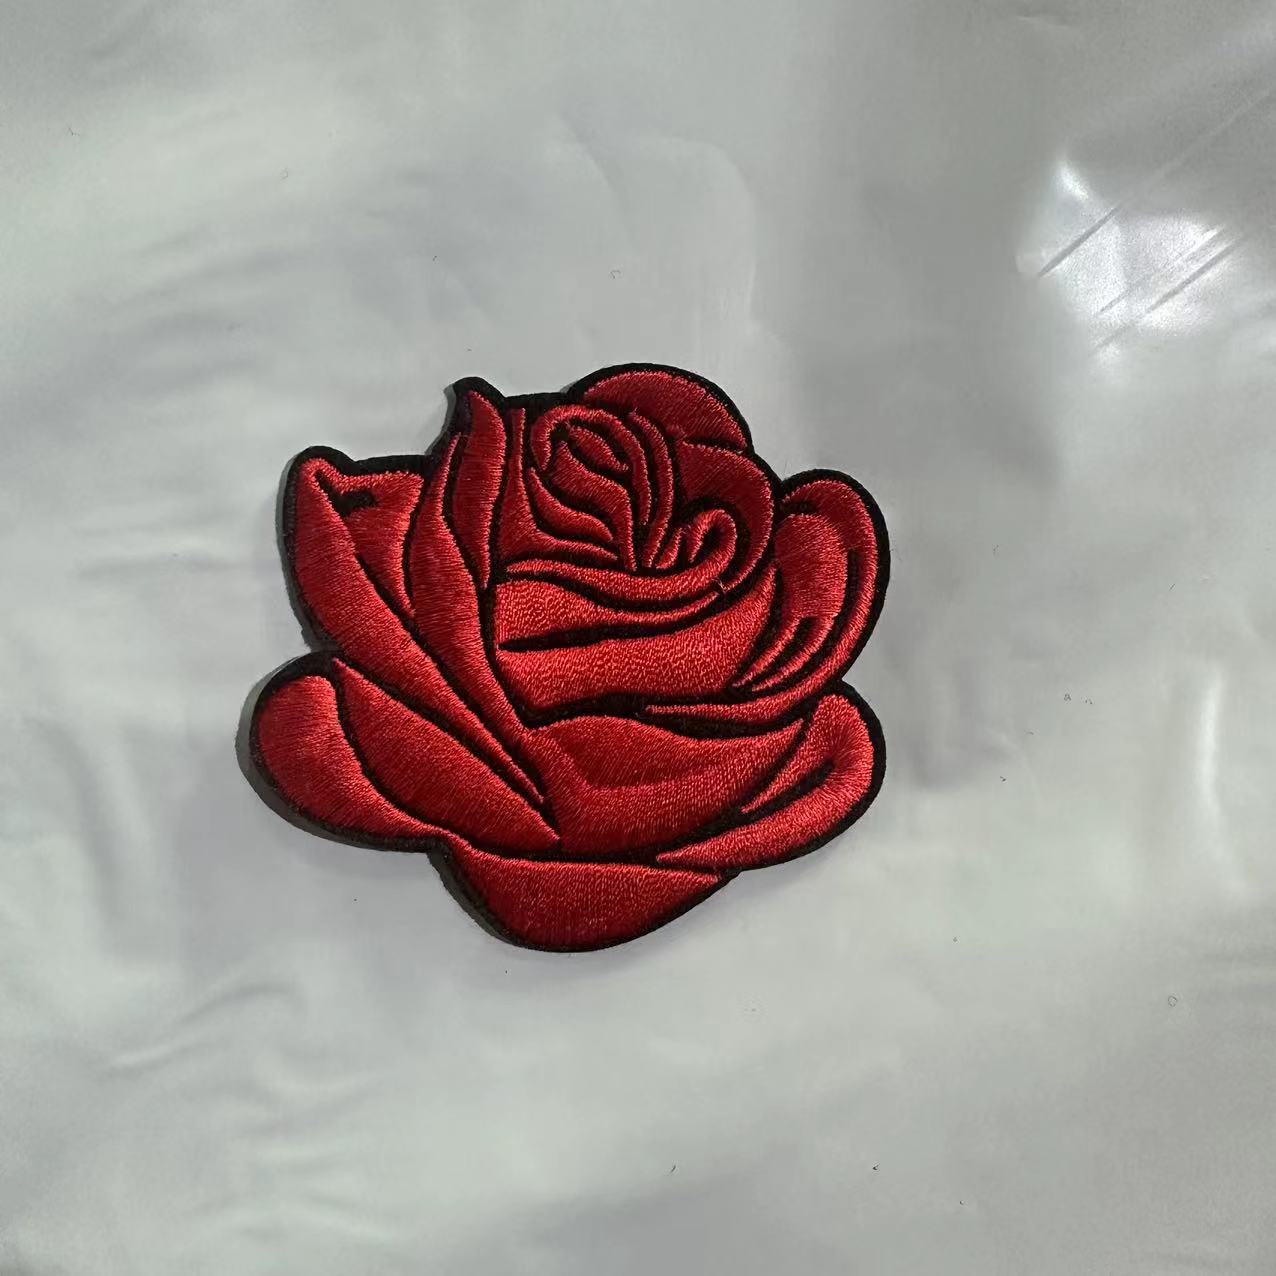  COHEALI 50pcs Rose Patch Iron on Applique Patch Rose